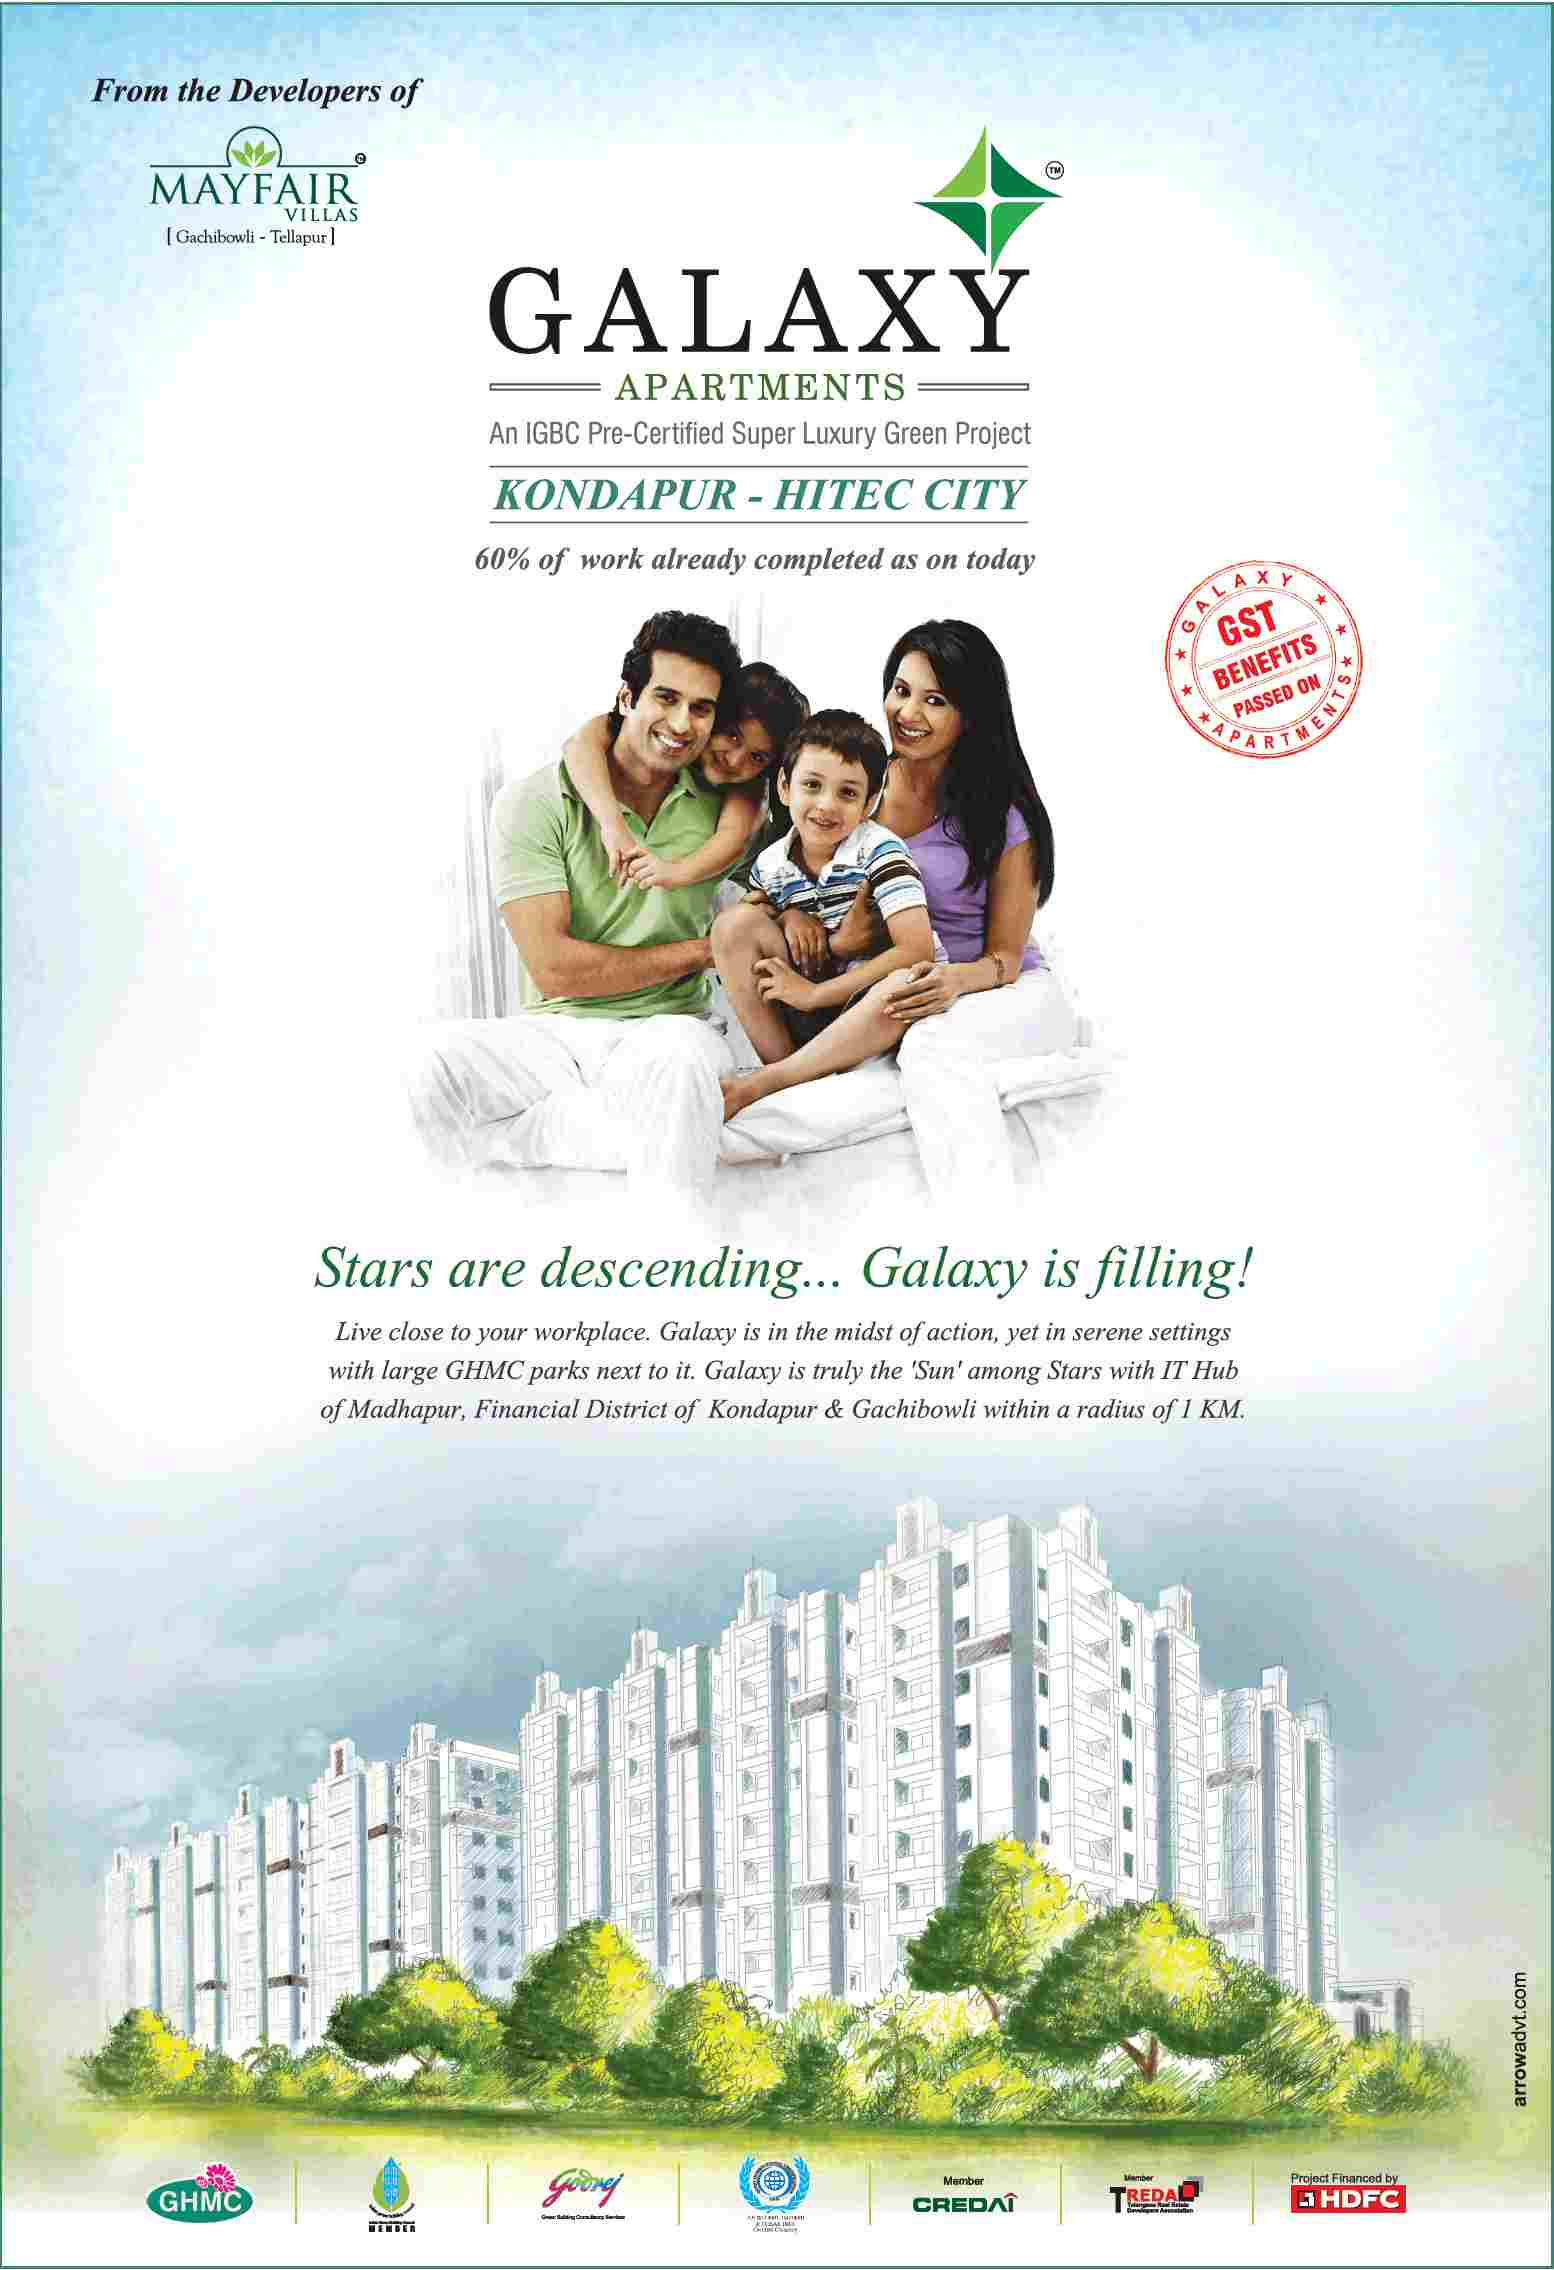 Reside in Greenmark Galaxy, an IGBC Pre-Certified super luxury green project in Hyderabad